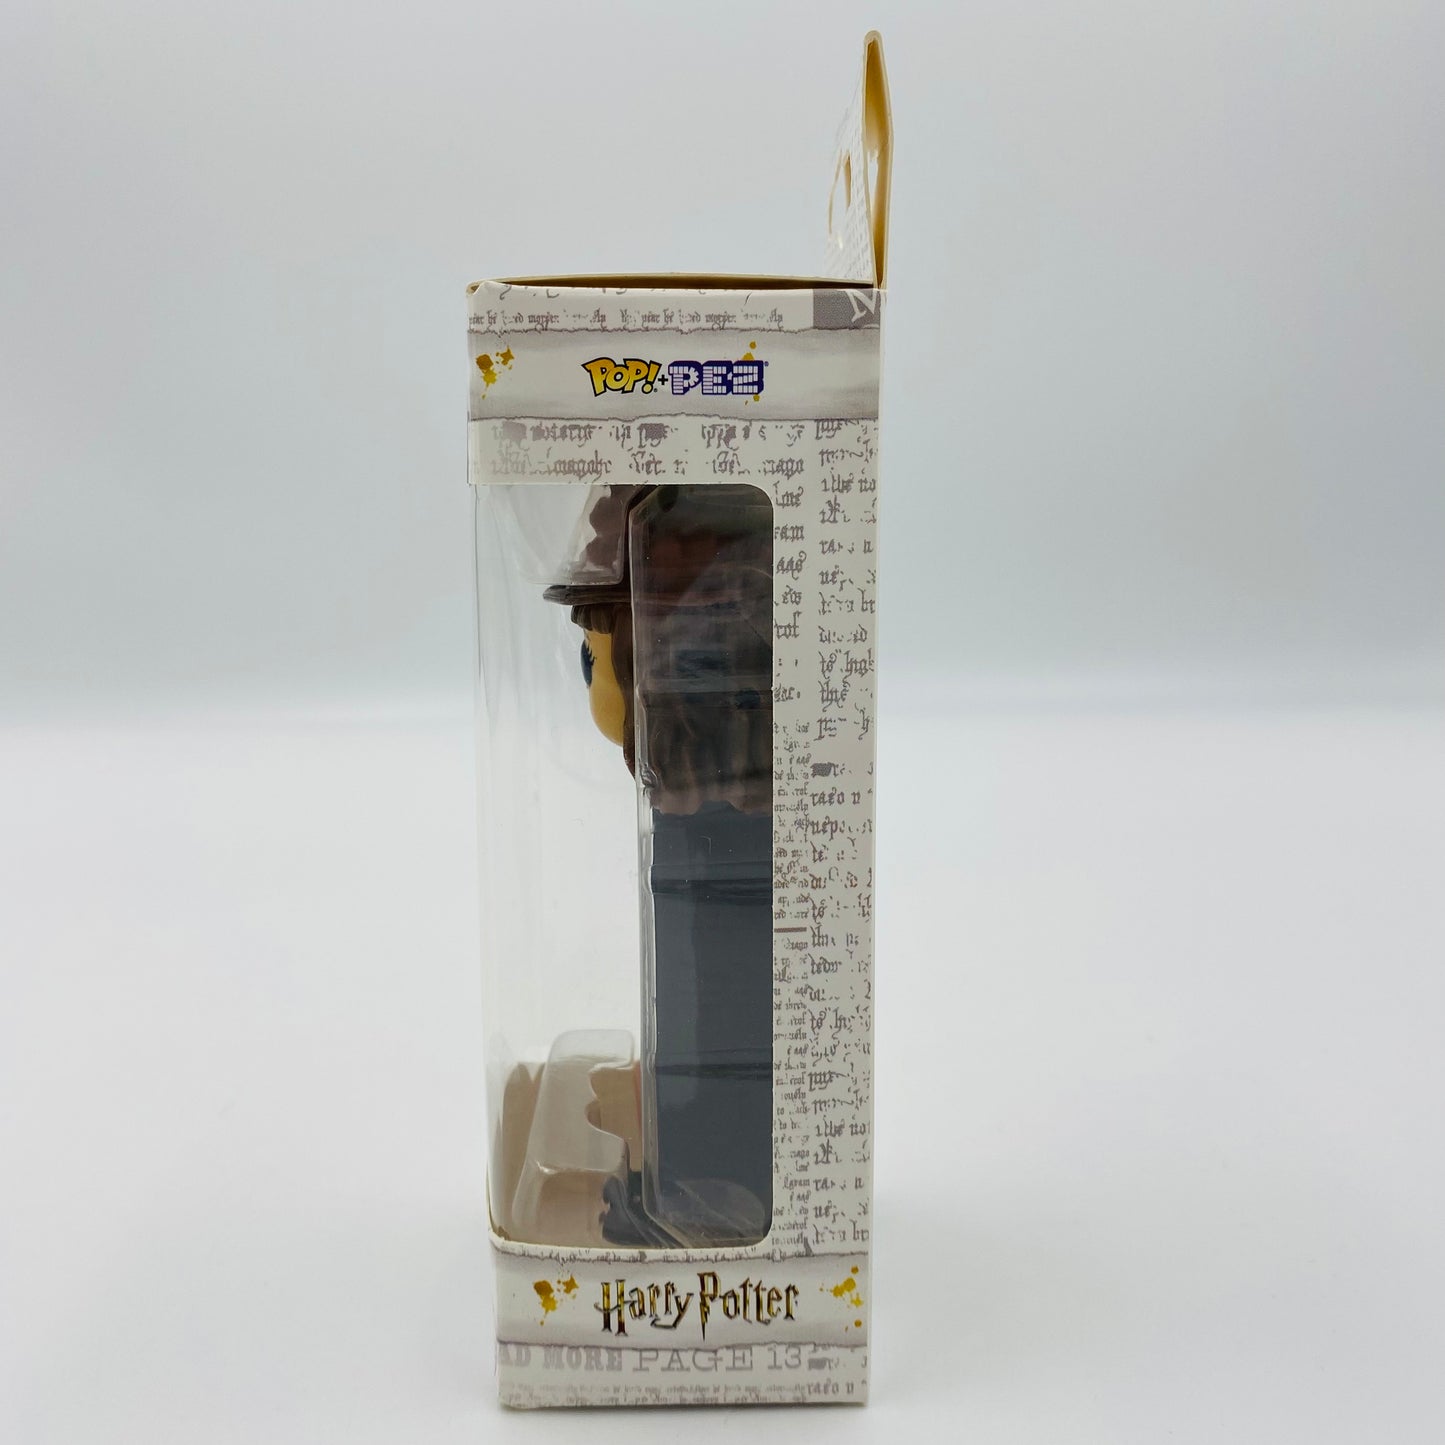 Harry Potter Hermione Granger Pop! + PEZ dispenser (2018) boxed